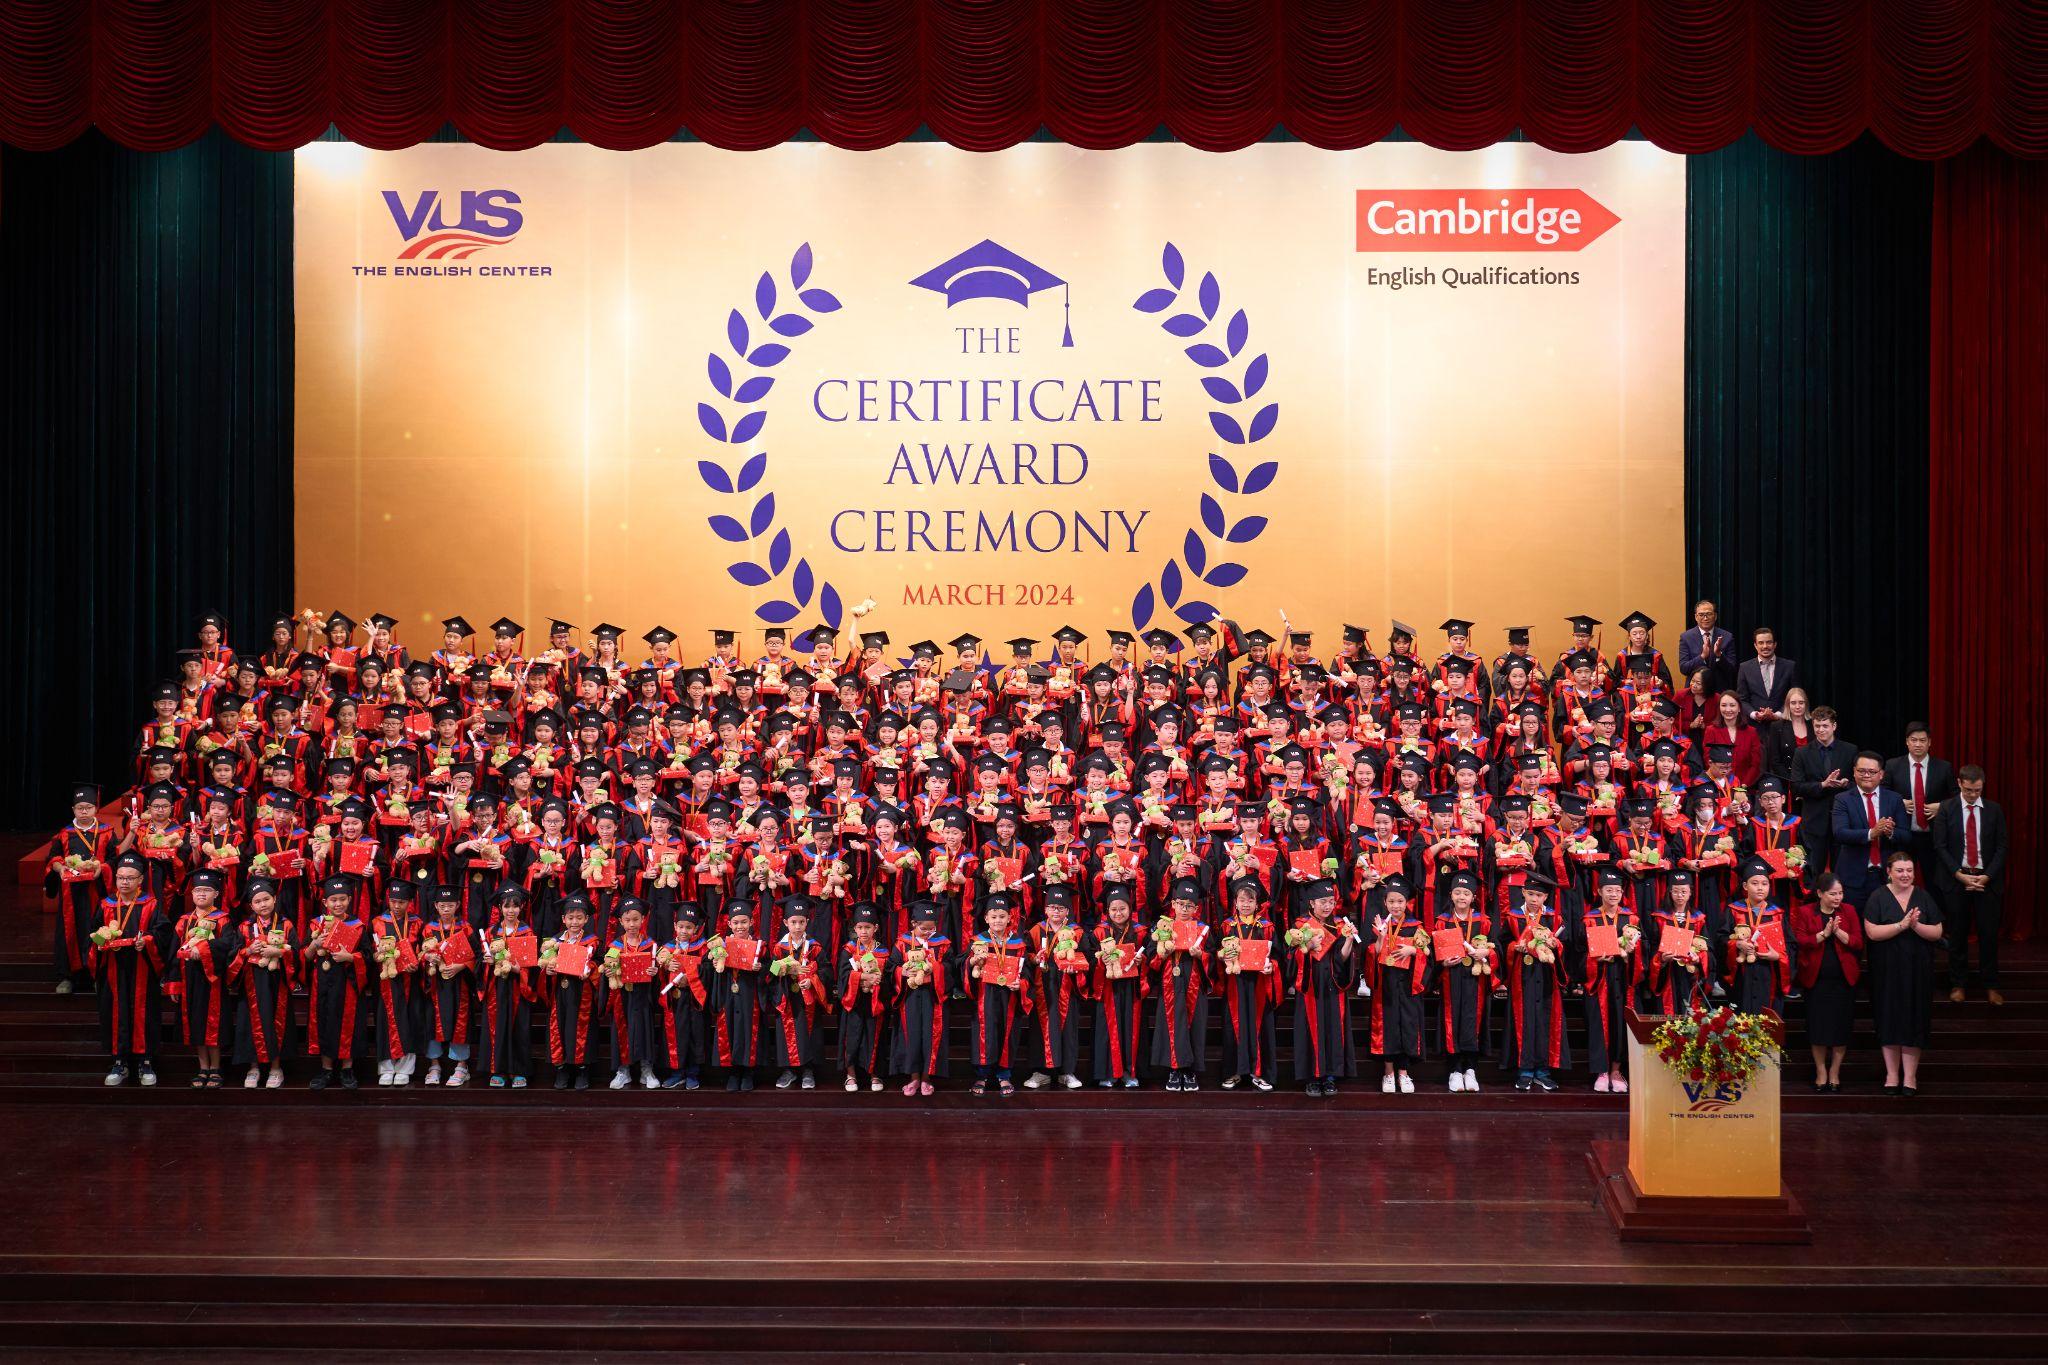 Mở màn năm Rồng, VUS ghi nhận kỷ lục Việt Nam với 186.840 học viên đạt chứng chỉ